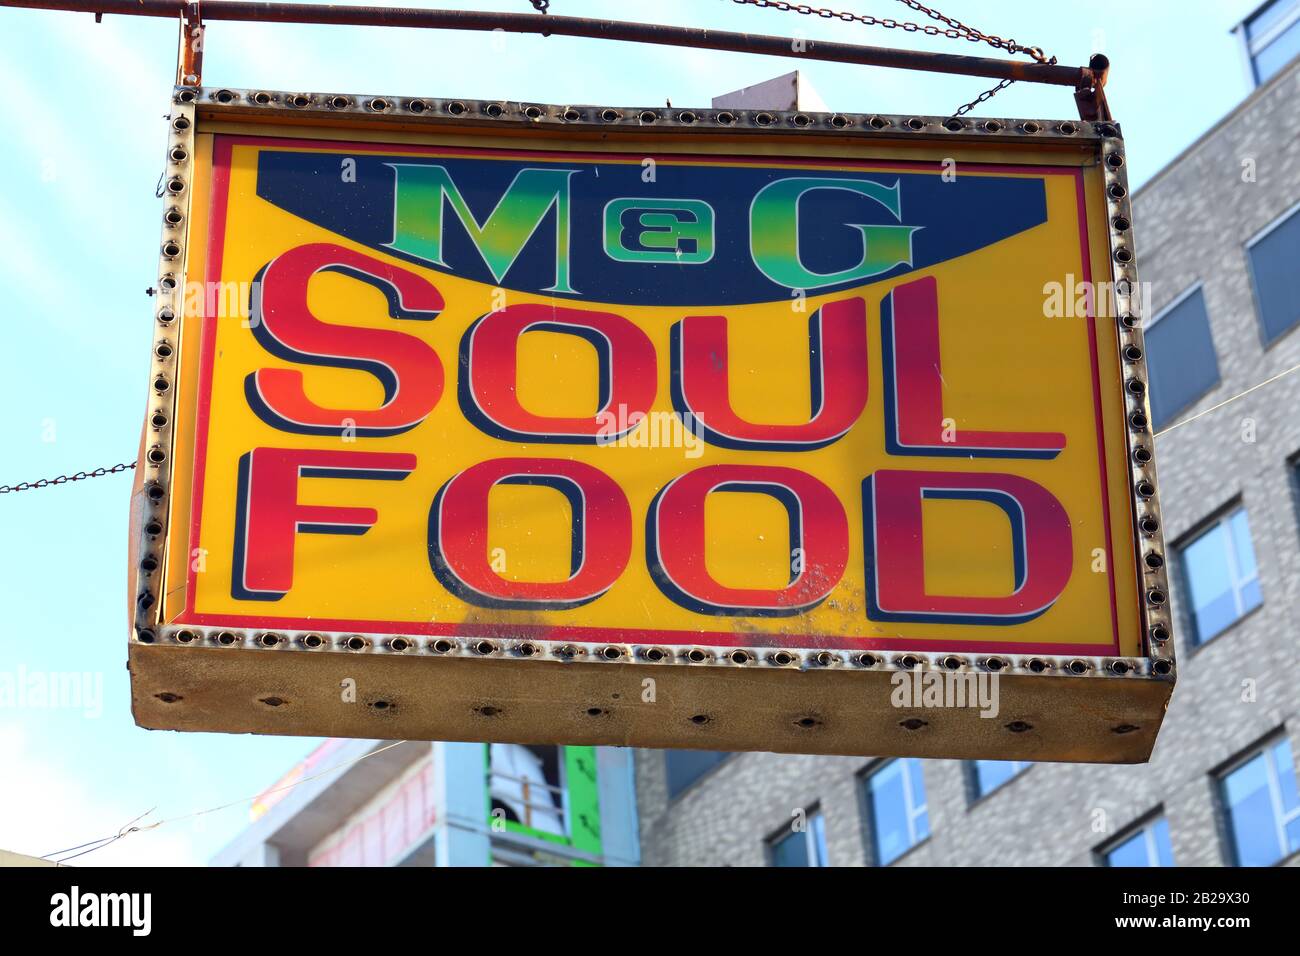 M&G Diner Schild, 383 West 125 St, New York New York New York New York New York Storefront Schingle eines ikonischen Restaurants, das 2008 geschlossen wurde. Stockfoto